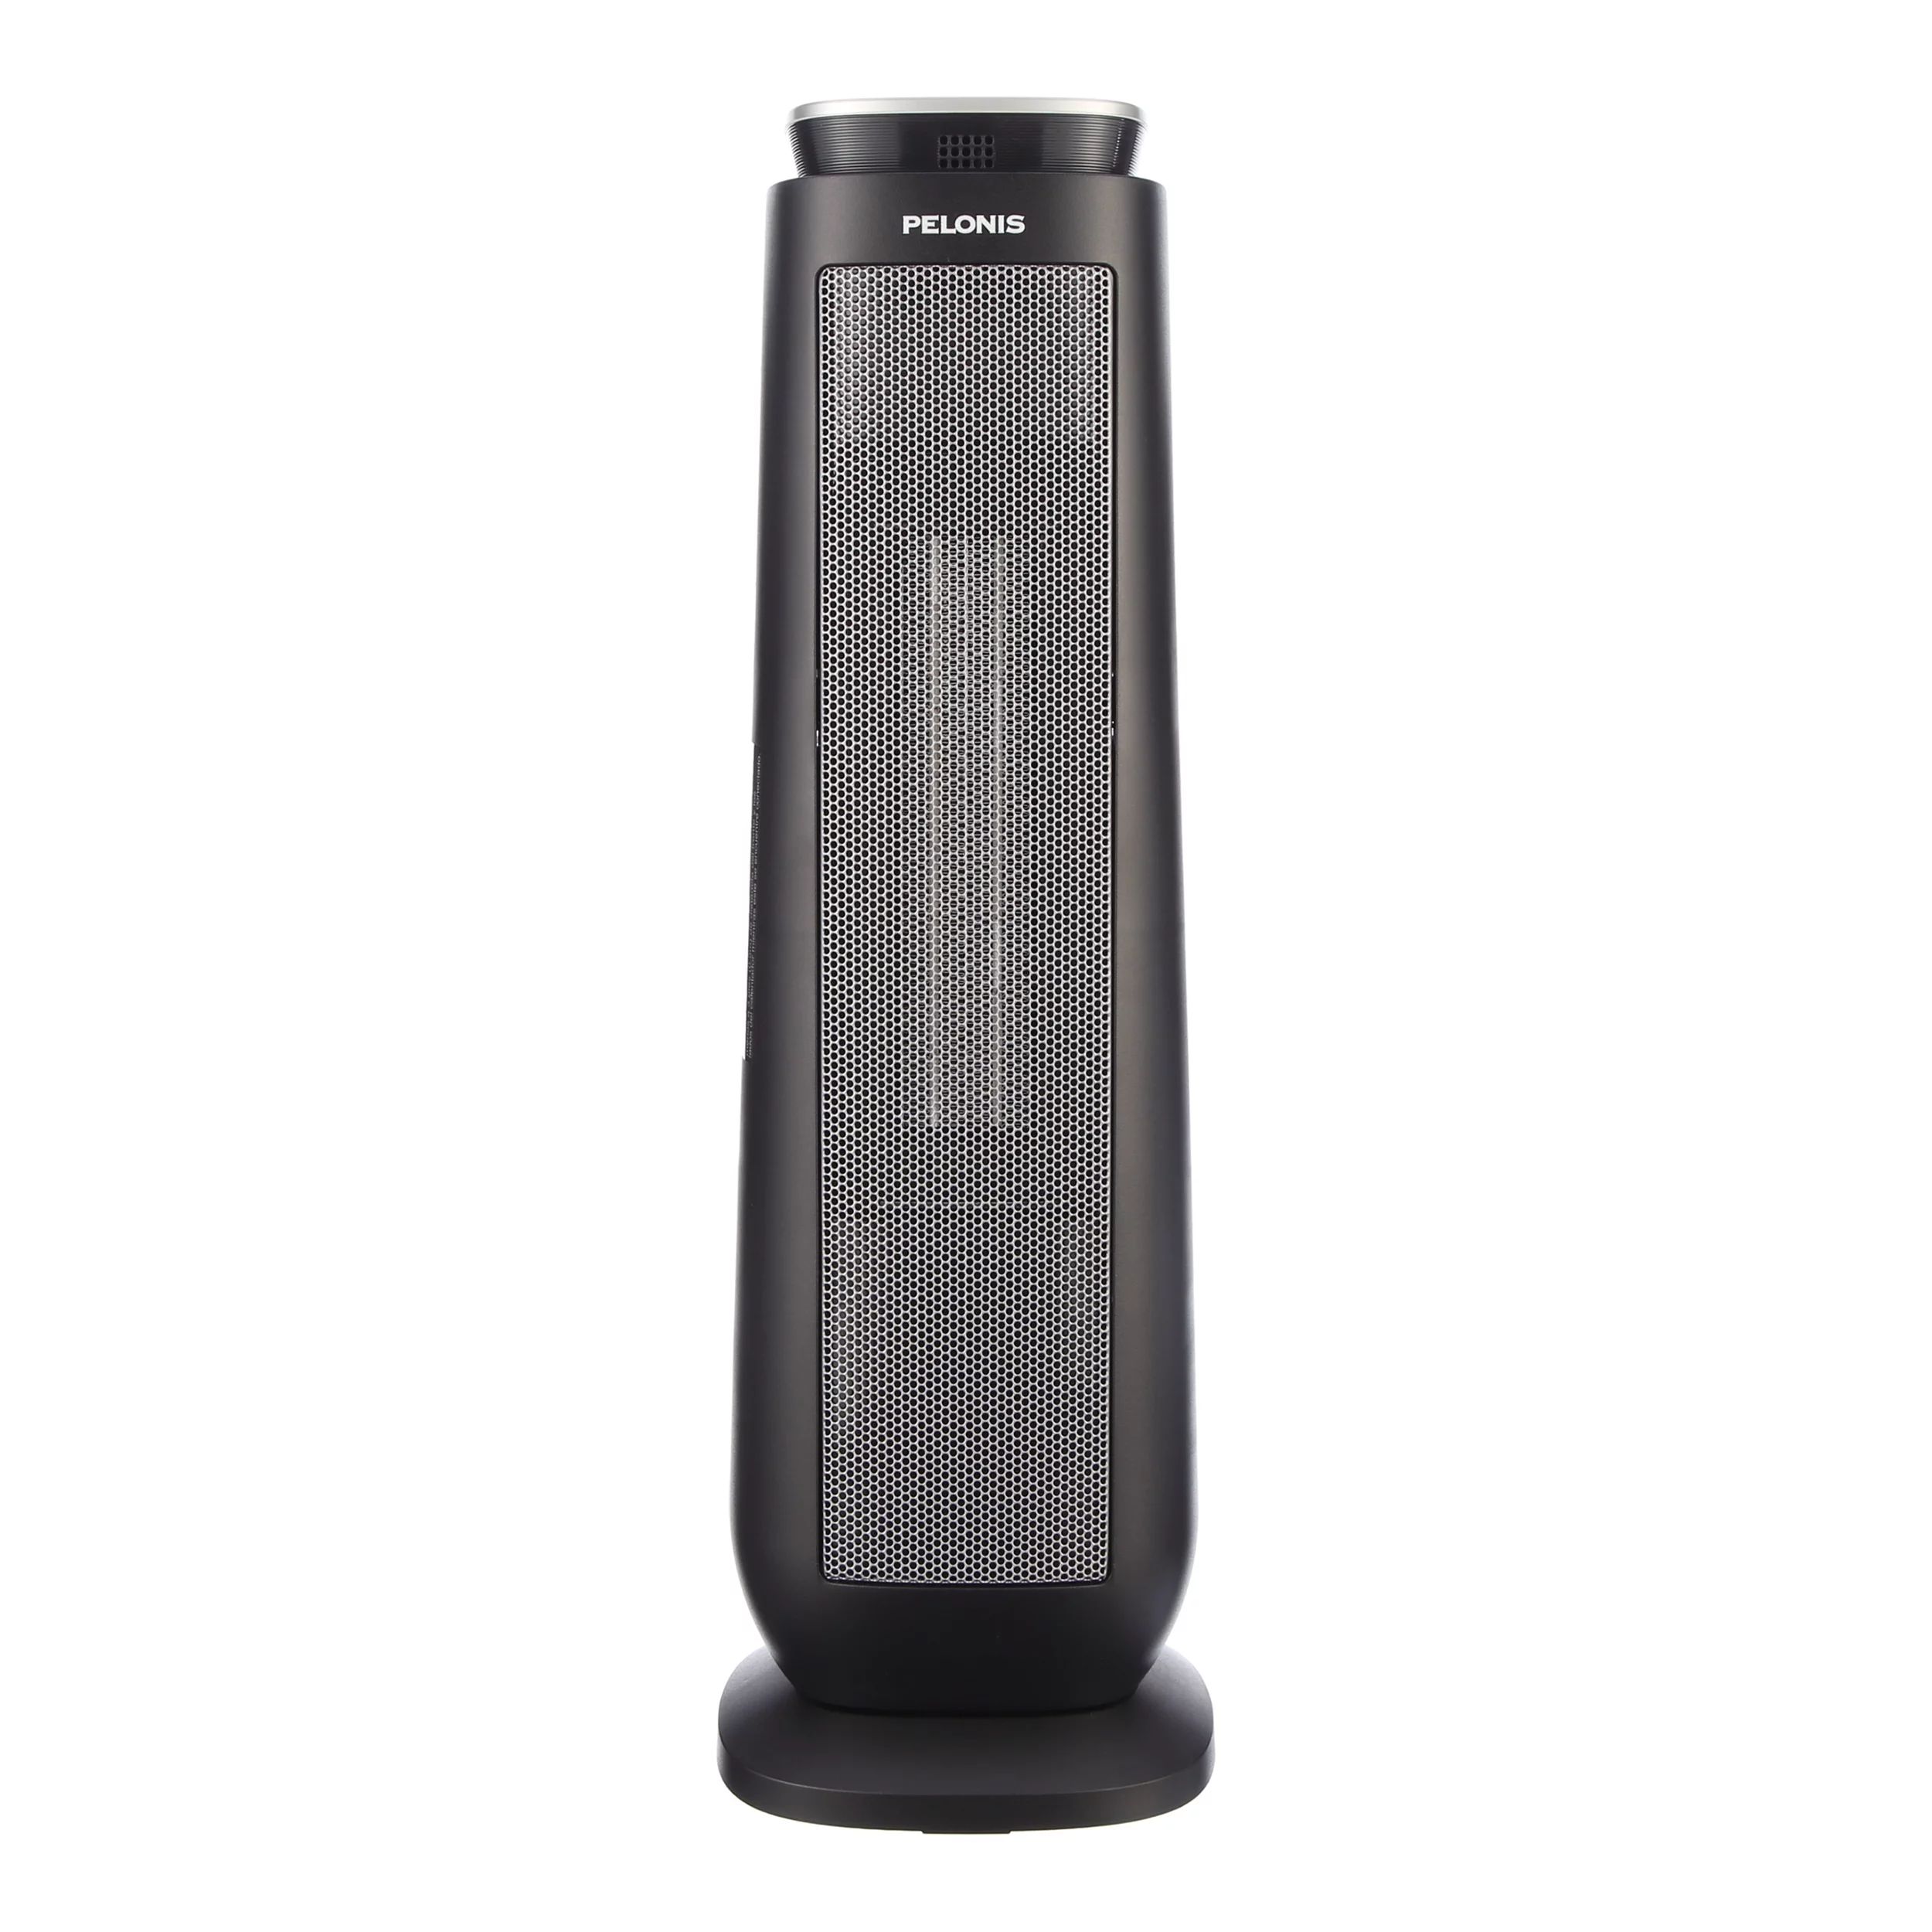 Pelonis 23" Ceramic Tower Fan-Forced Space Heater, PTHW15-18MR, Black | Walmart (US)